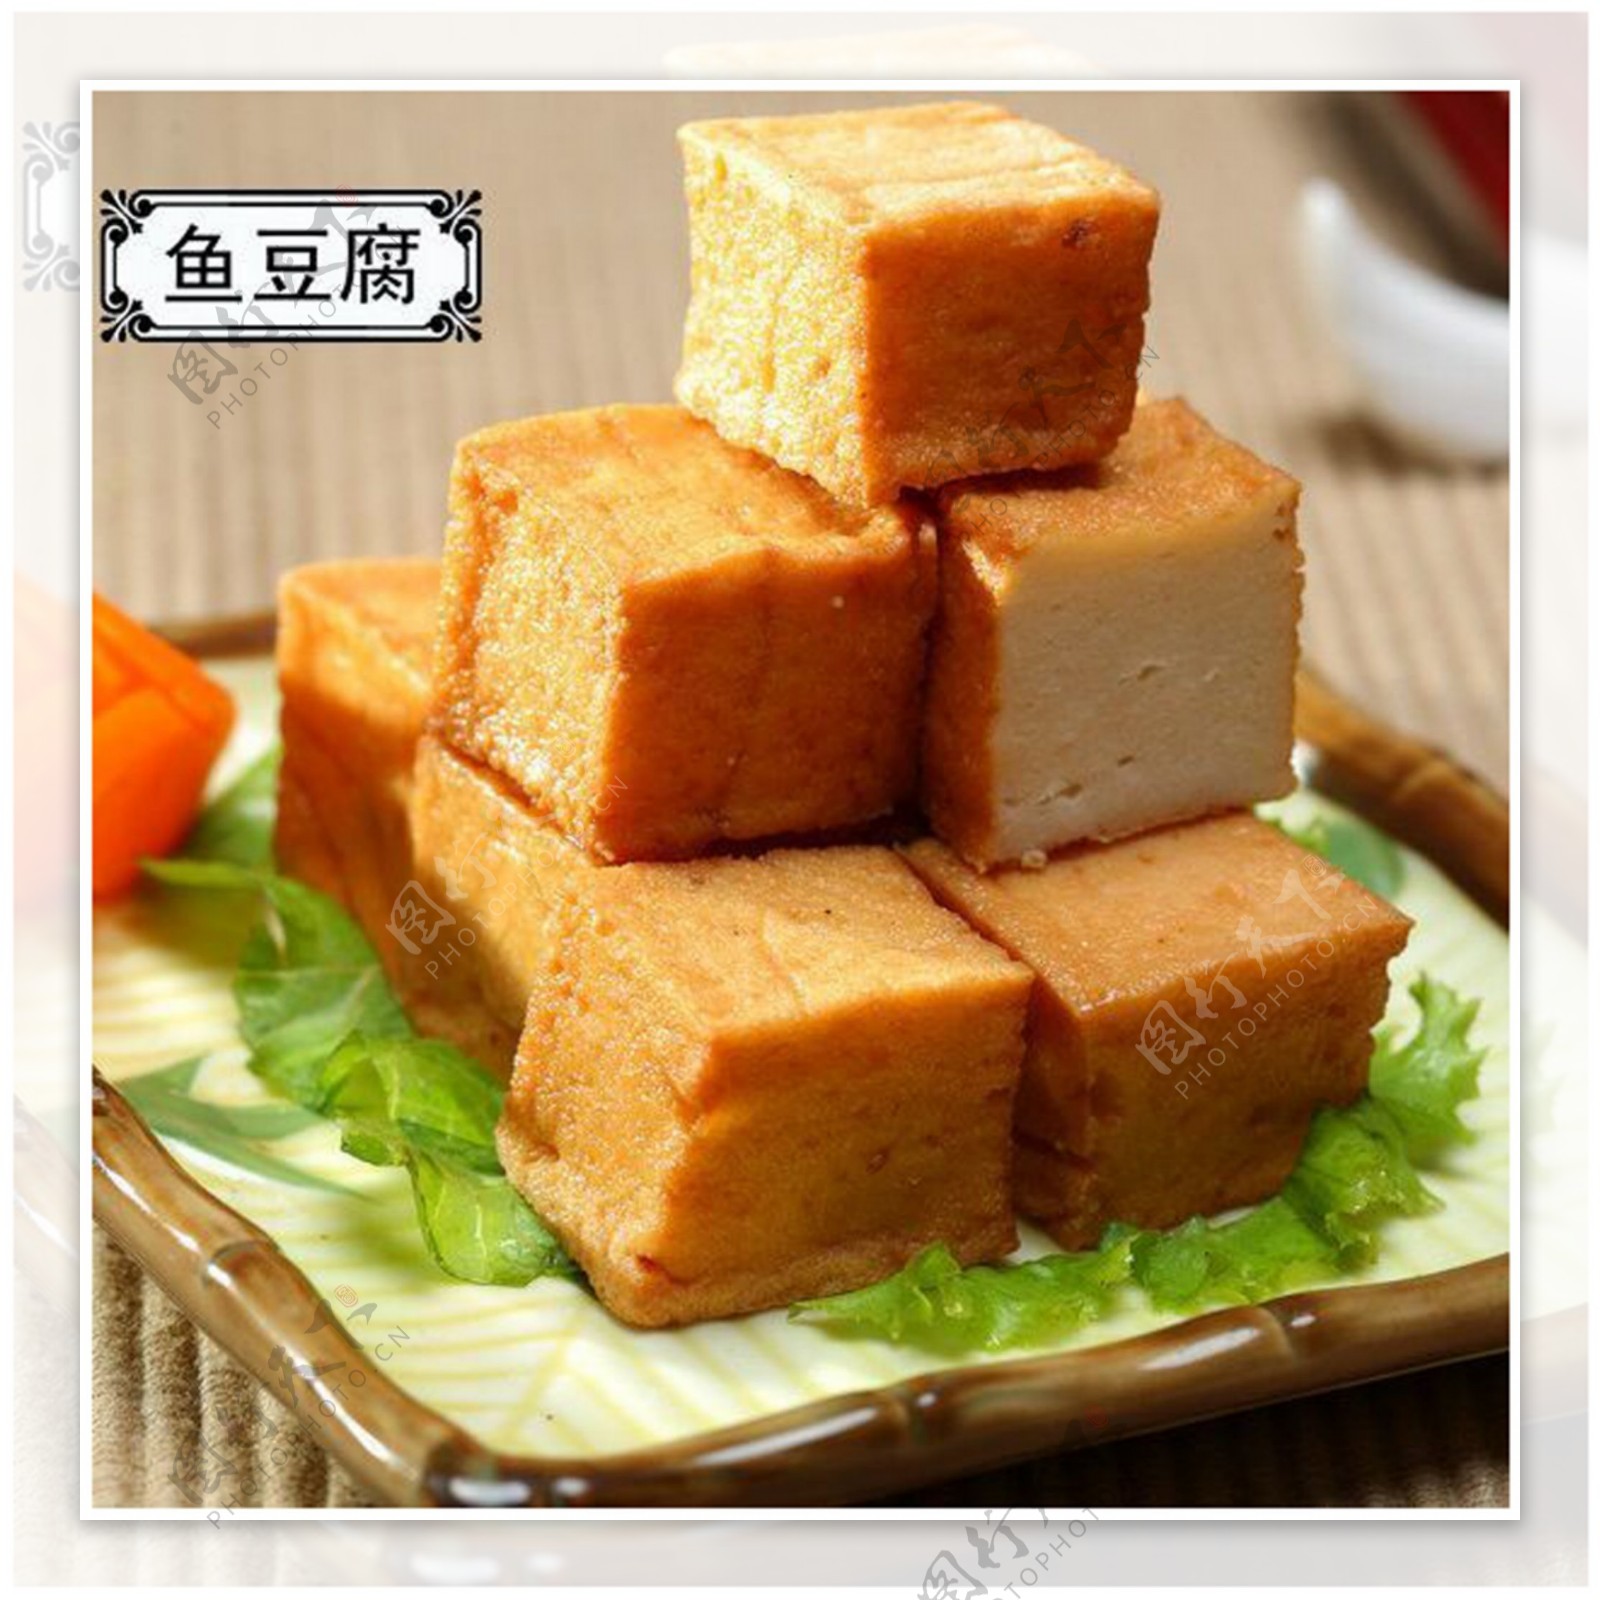 鱼豆腐串-镇江姜一串餐饮管理有限公司